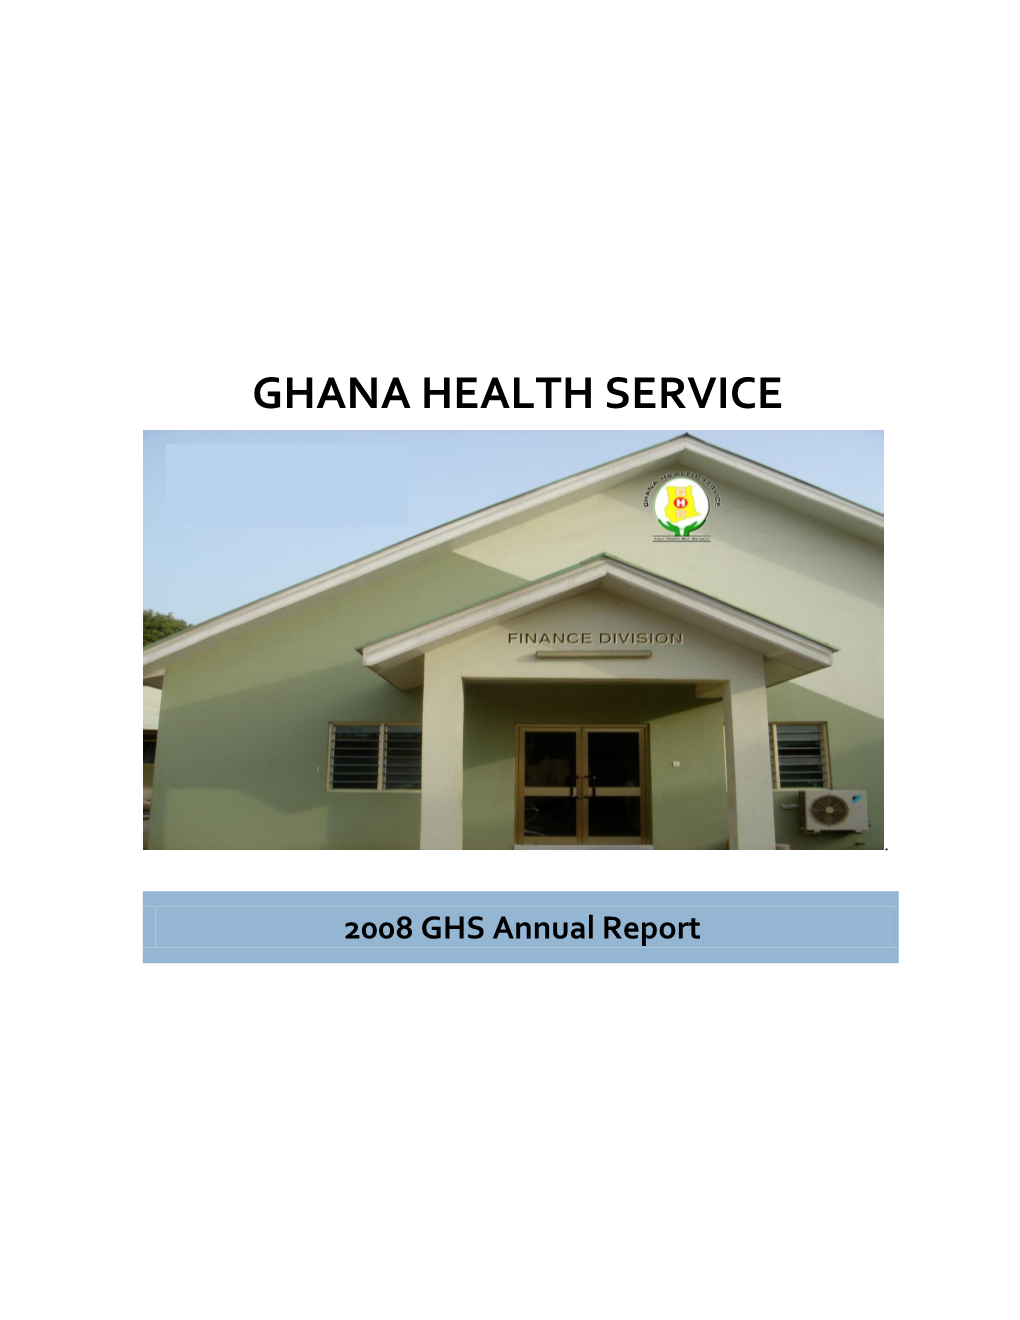 Ghana Health Services